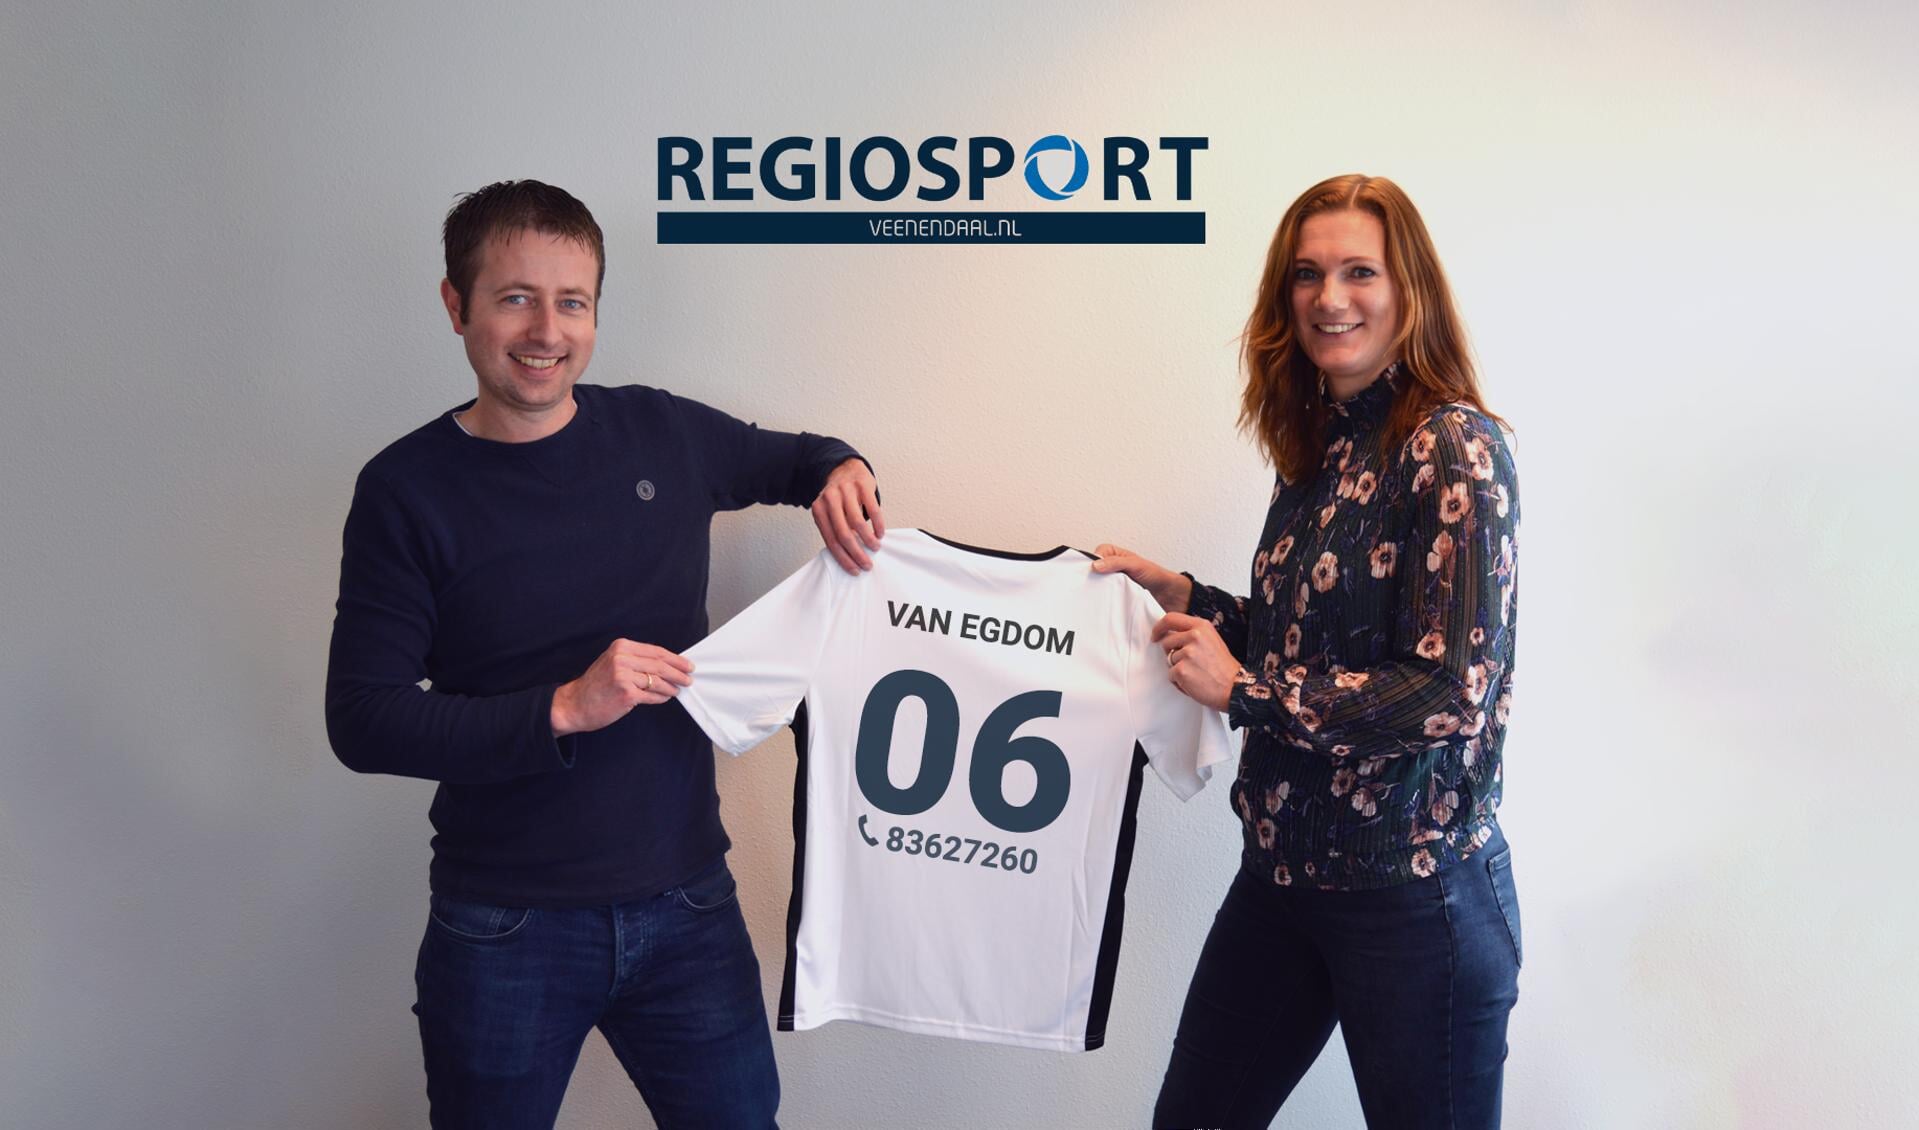 Bij de presentatie van onze nieuwe teamgenoot ontving Marieke van Egdom symbolisch haar nieuwe shirt uit handen van Sander van Snippenberg.